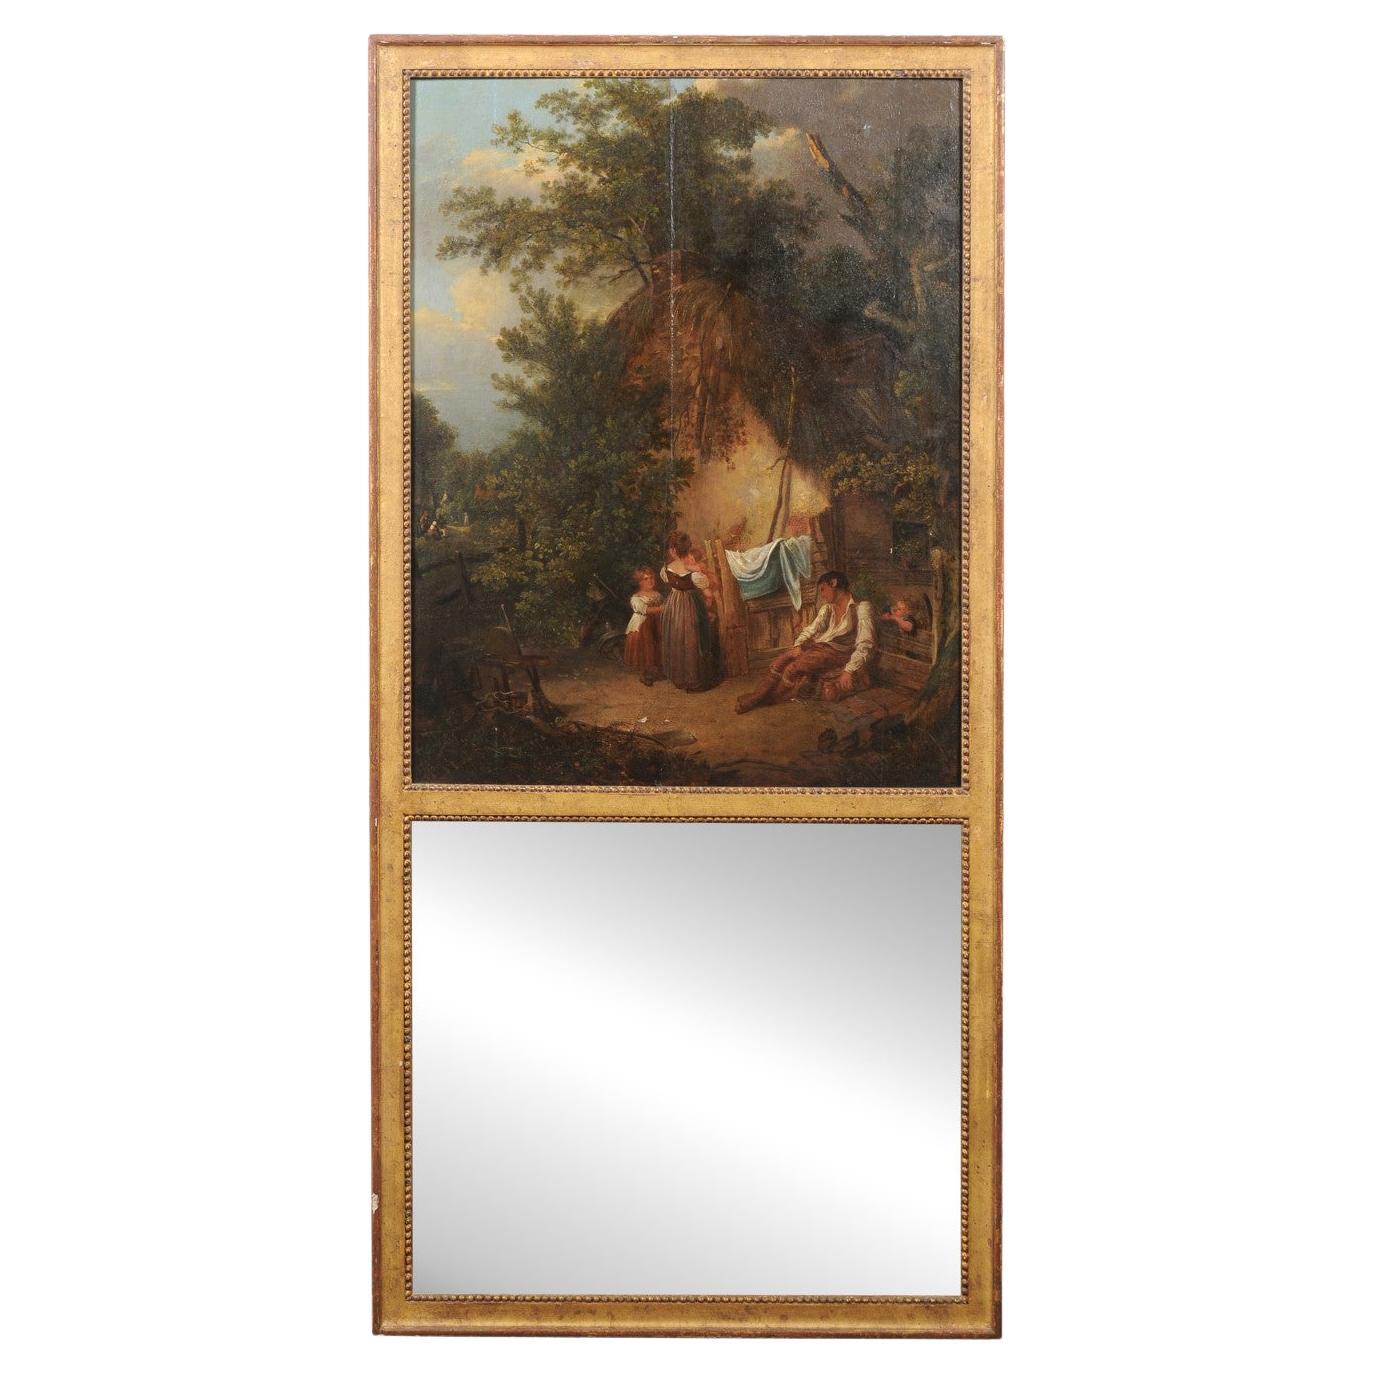 Miroir doré de style Trumeau avec peinture à l'huile d'une scène de ferme sur un panneau supérieur